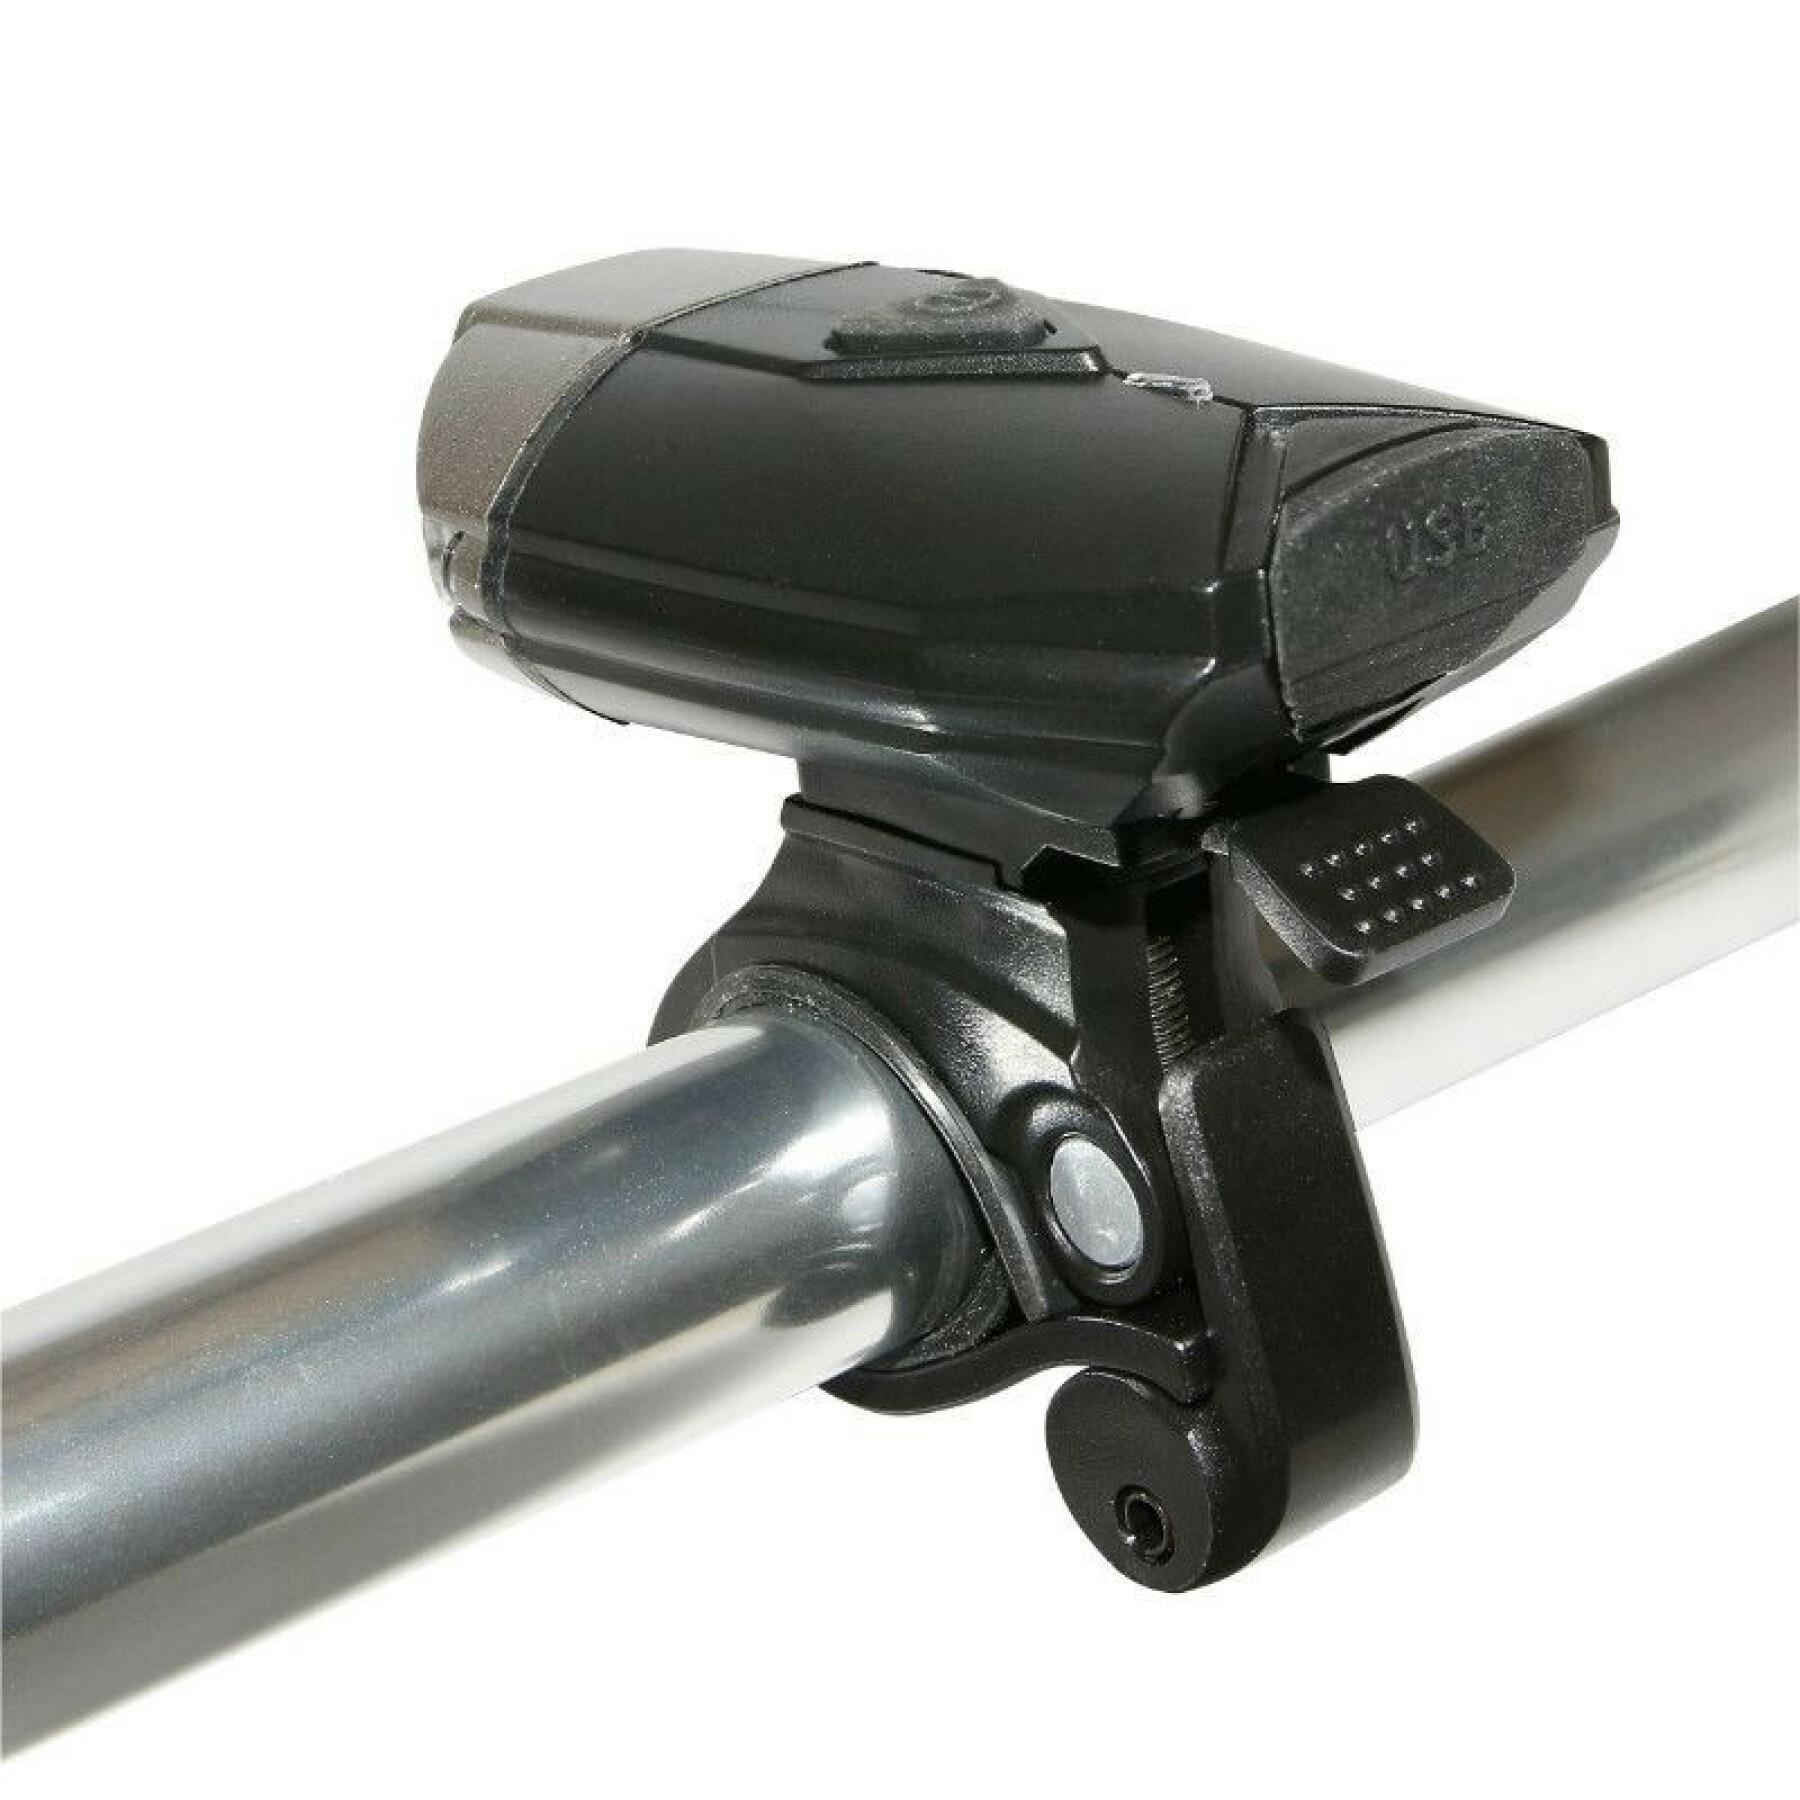 USB-Fahrradbeleuchtung vorne am Bügel 2 Intensitäten 100%-50% Bügel- oder Helmbefestigung P2R 300 Lumens